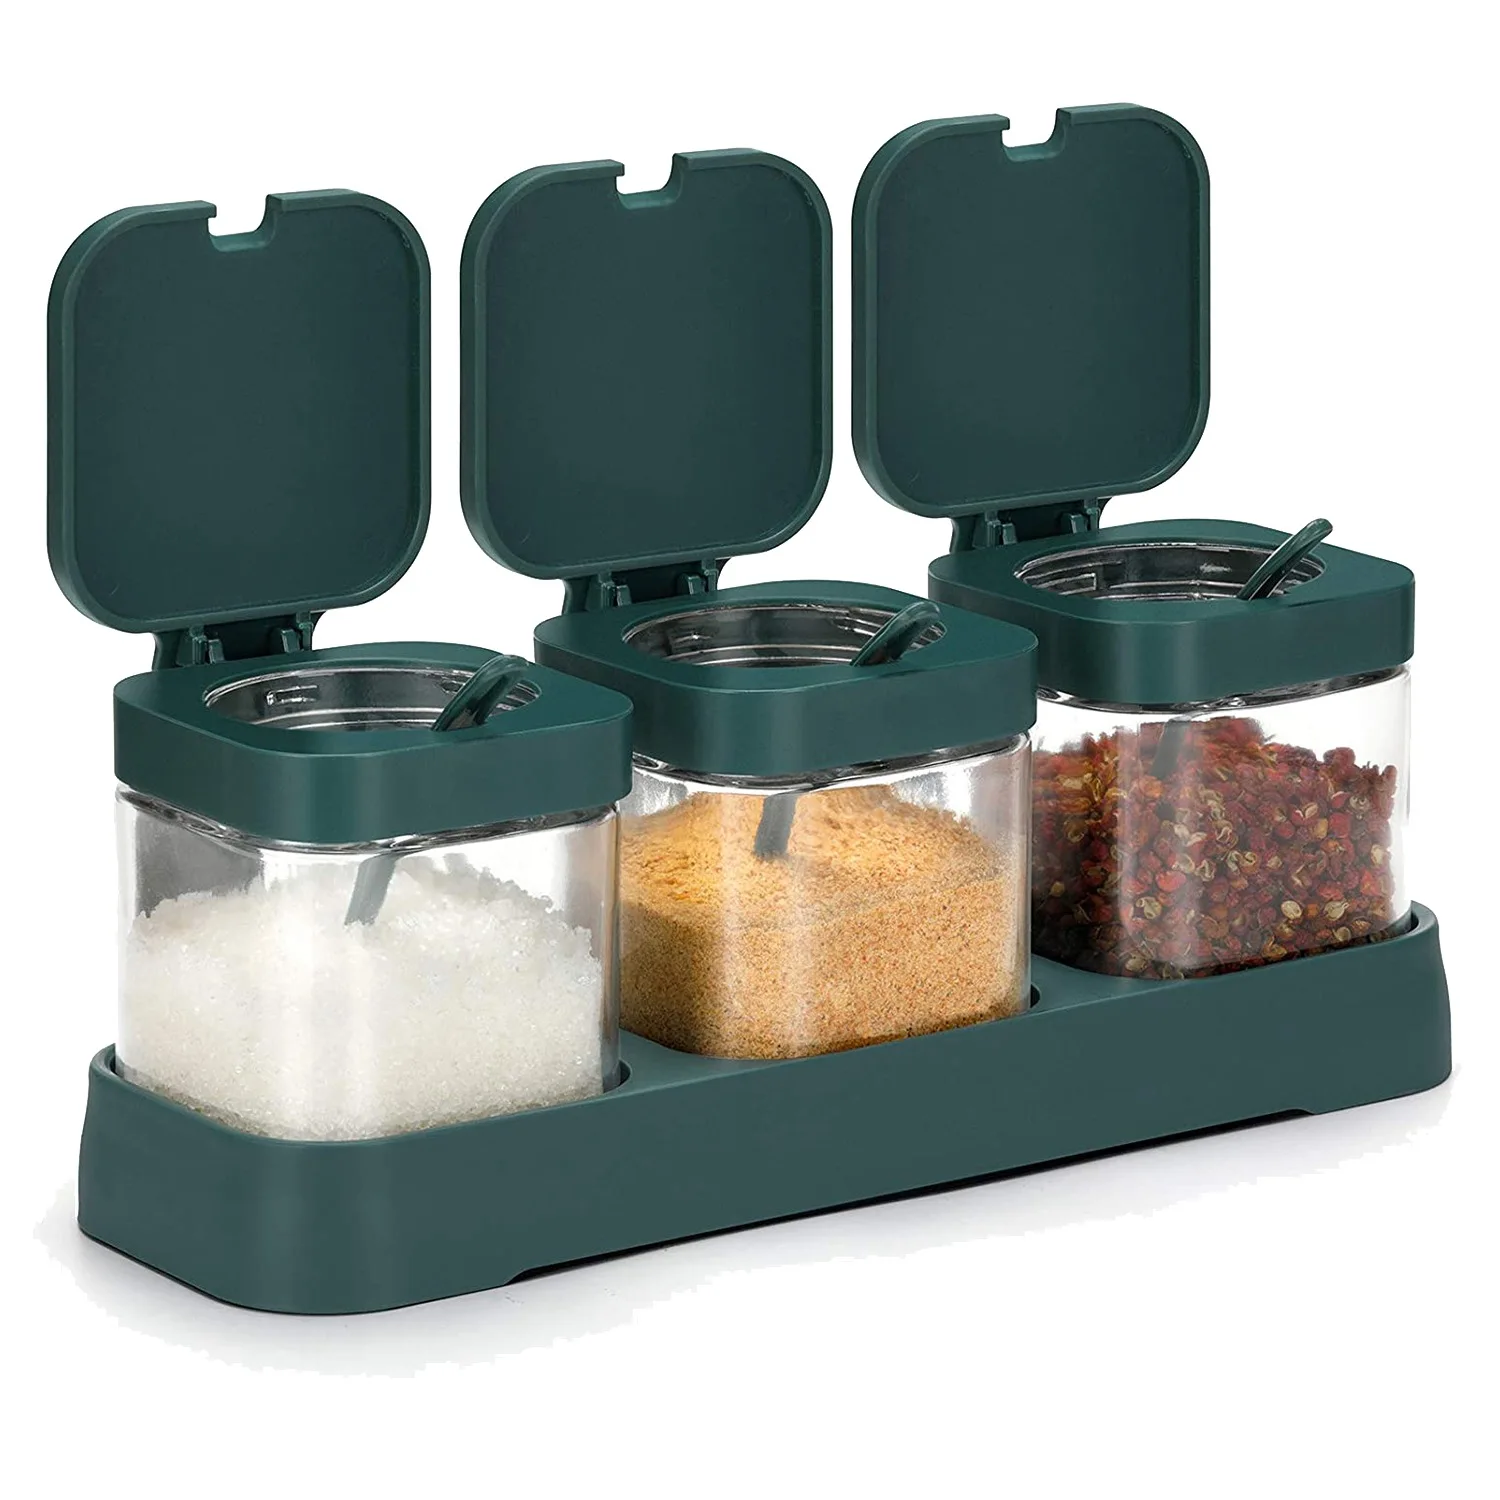 

Контейнер для приправ набор контейнеров для специй из 3 предметов с крышками и ложками, прозрачные стеклянные канистры для приправ, для кухни, зеленый